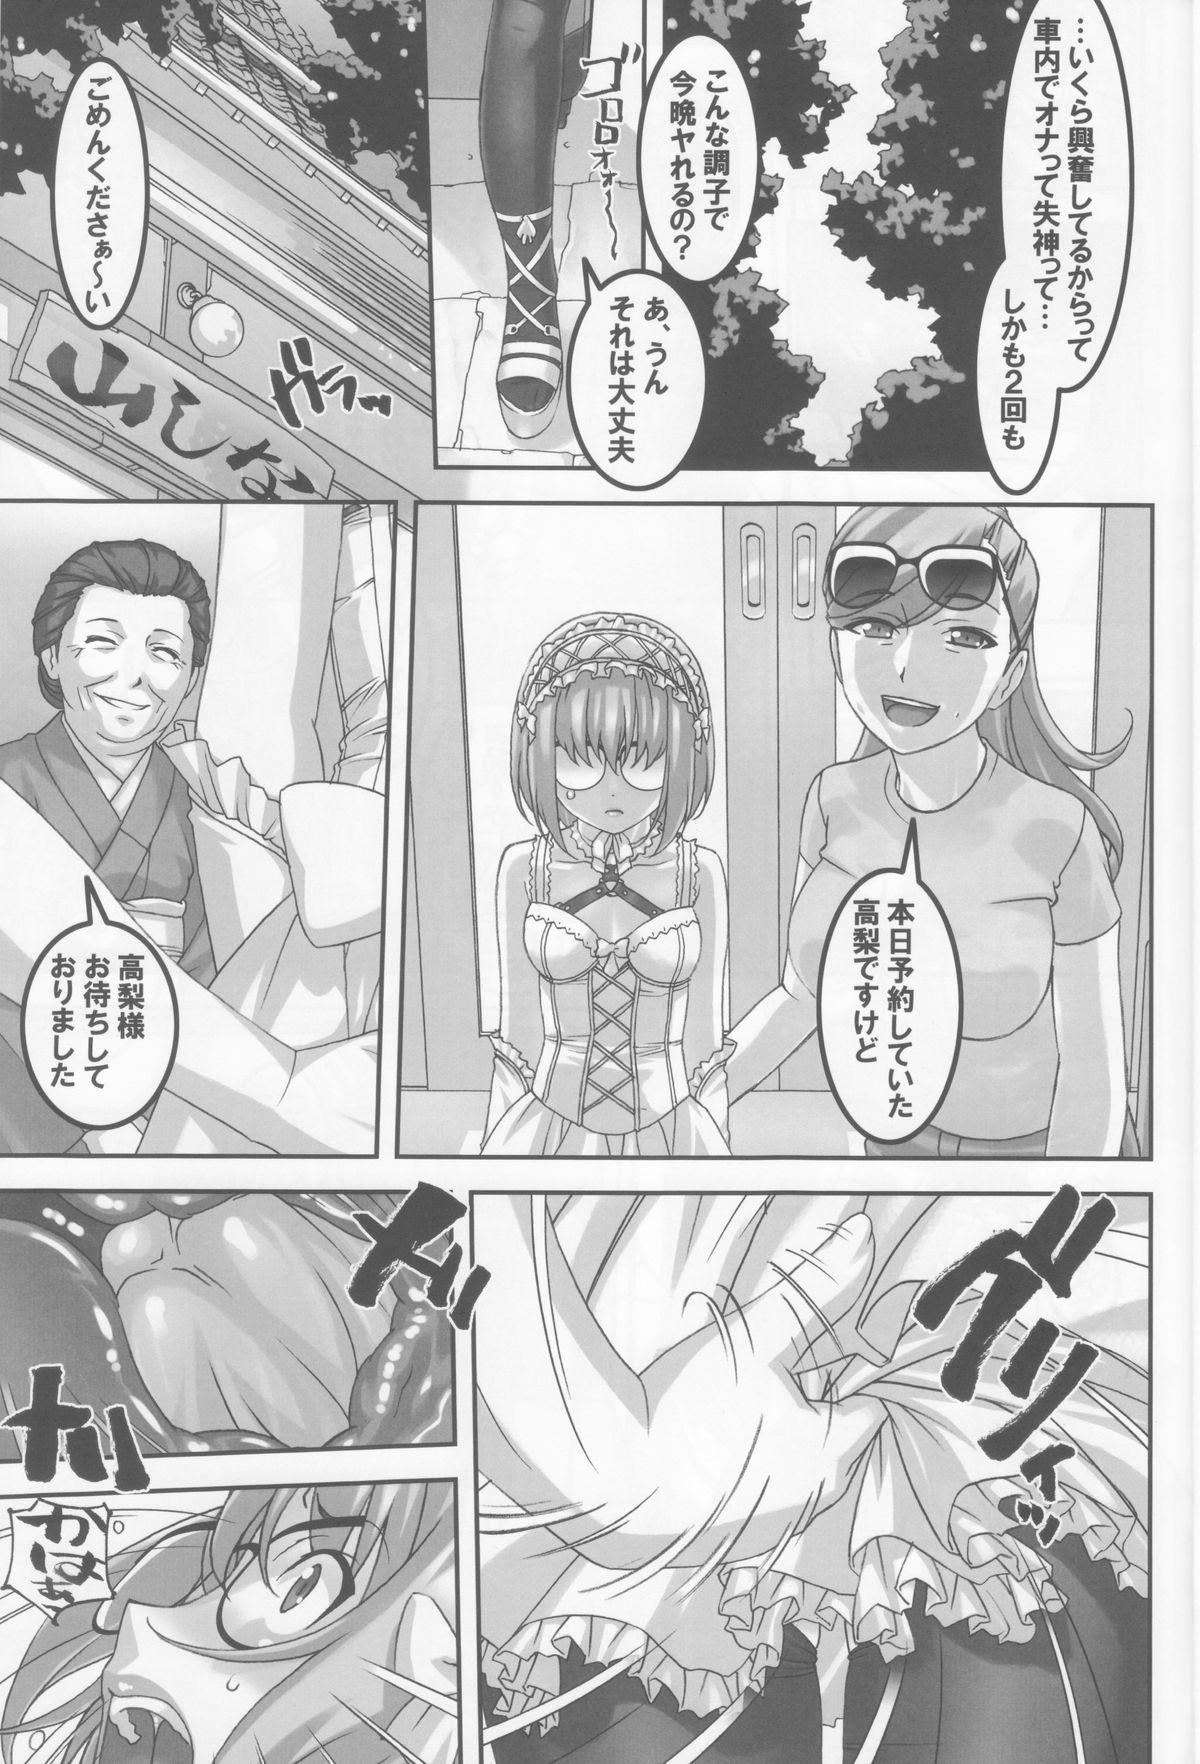 Stretch Anoko ga Natsuyasumi ni Ryokou saki de Oshiri no Ana wo Kizetsu suru hodo Naburare tsuzukeru Manga Leite - Page 12